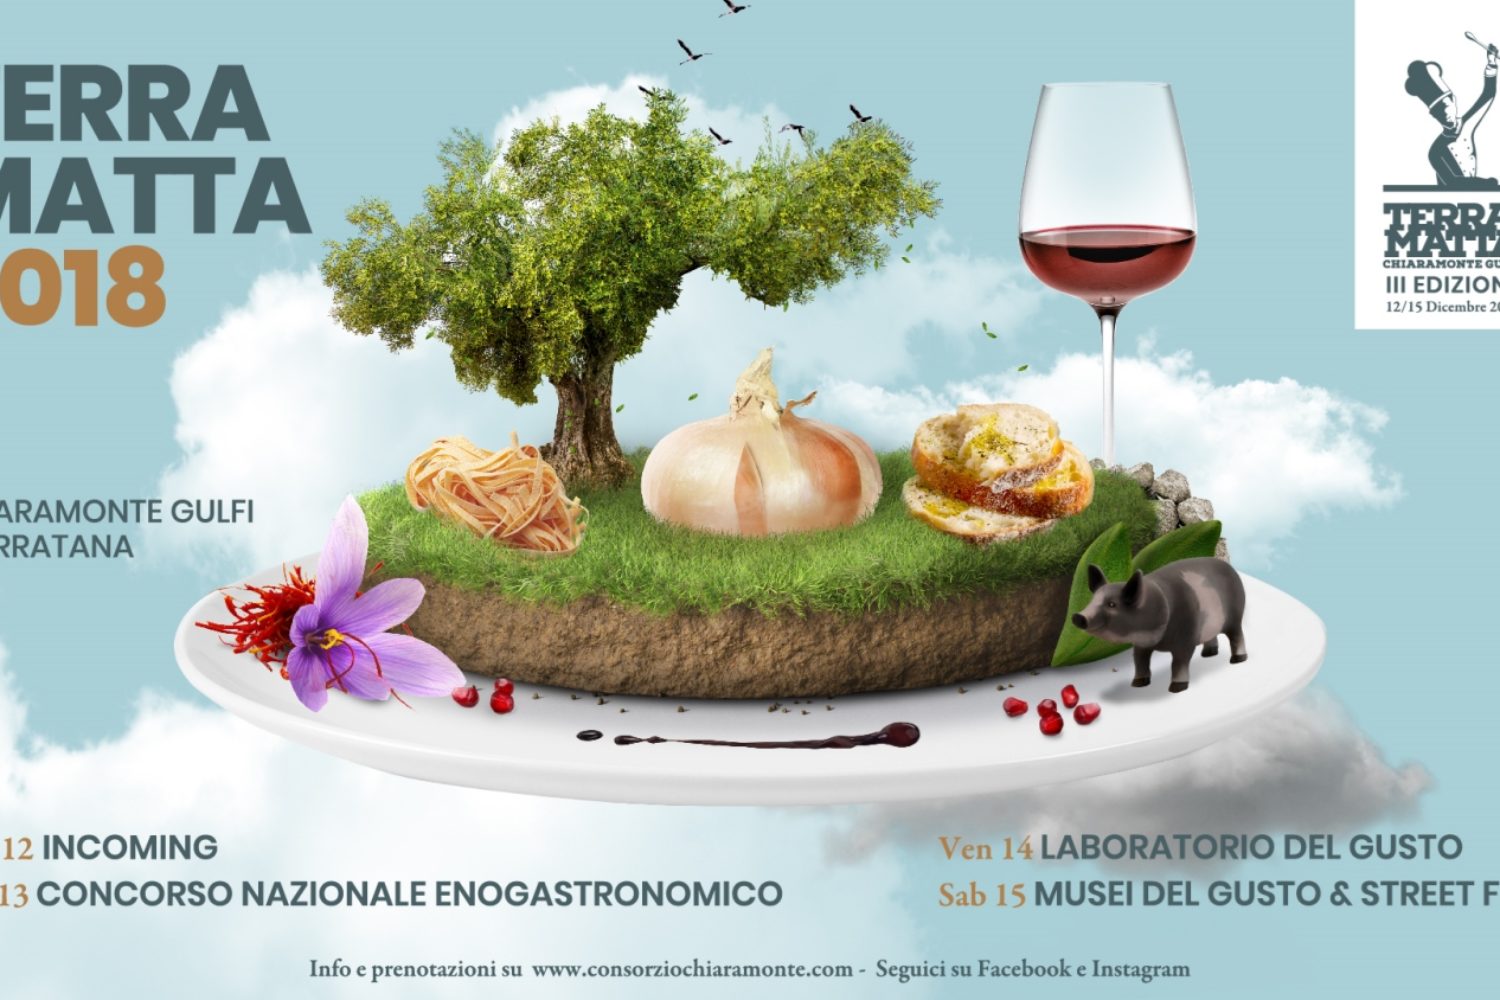 Terra Matta 2018, sei i ristoranti storici italiani selezionati. Molè: “Nomi prestigiosi, fiori all’occhiello della gastronomia italiana”